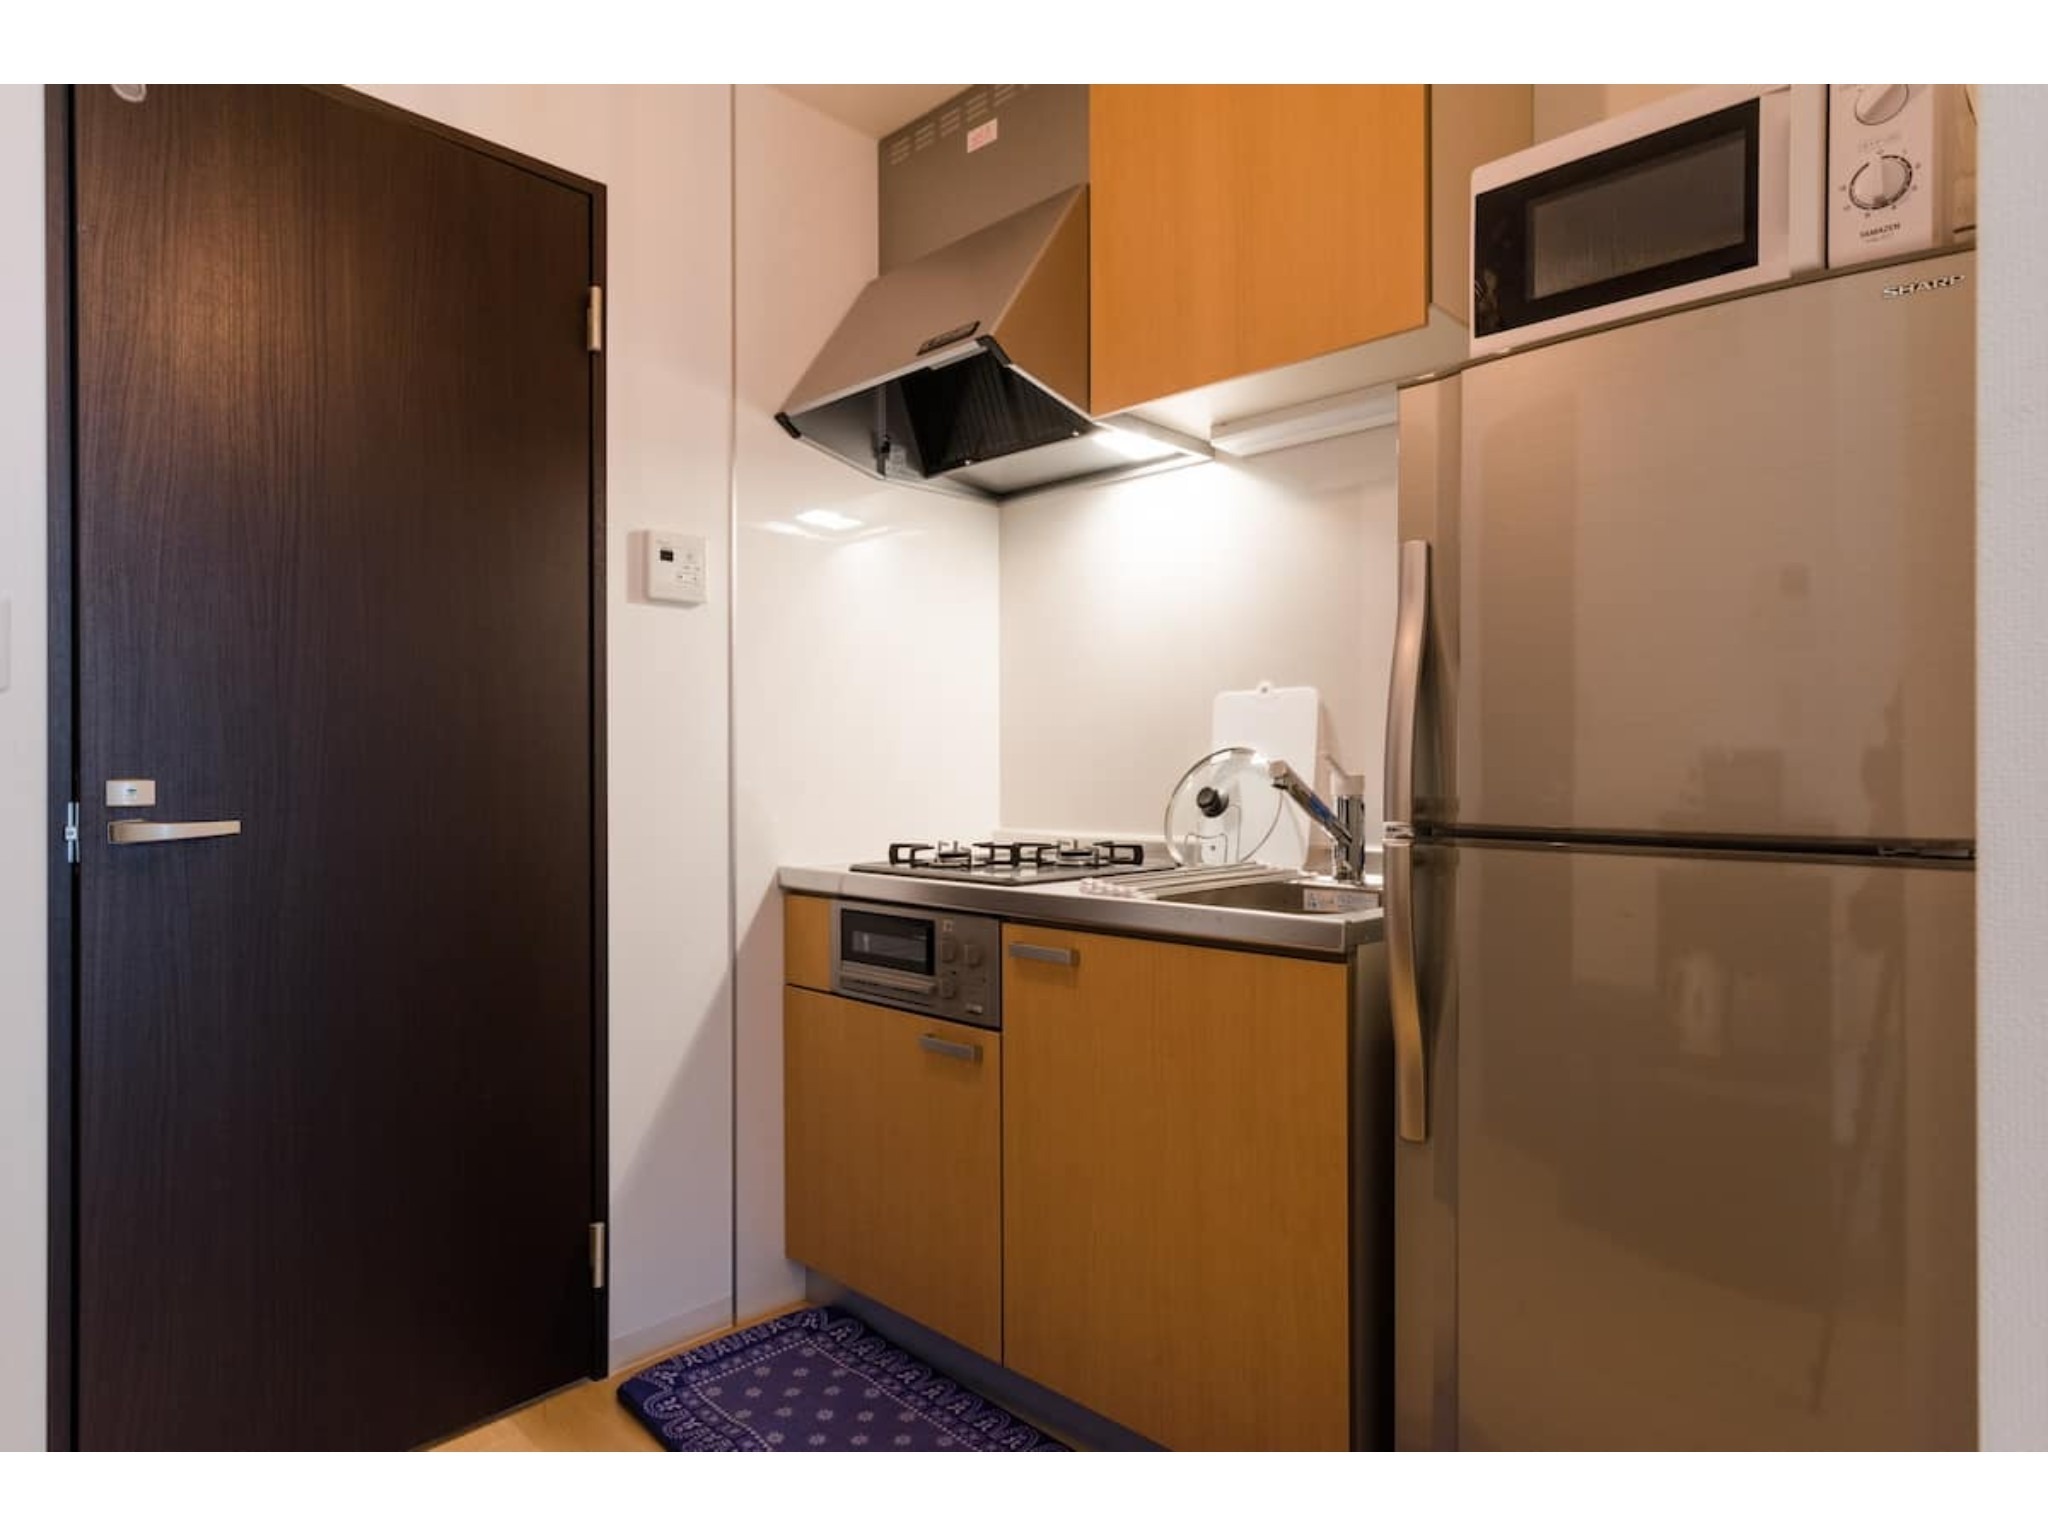 【一棟貸切】西新宿5丁目駅徒歩5分! 8人宿泊可能で1軒家まるごと貸切可能です^^